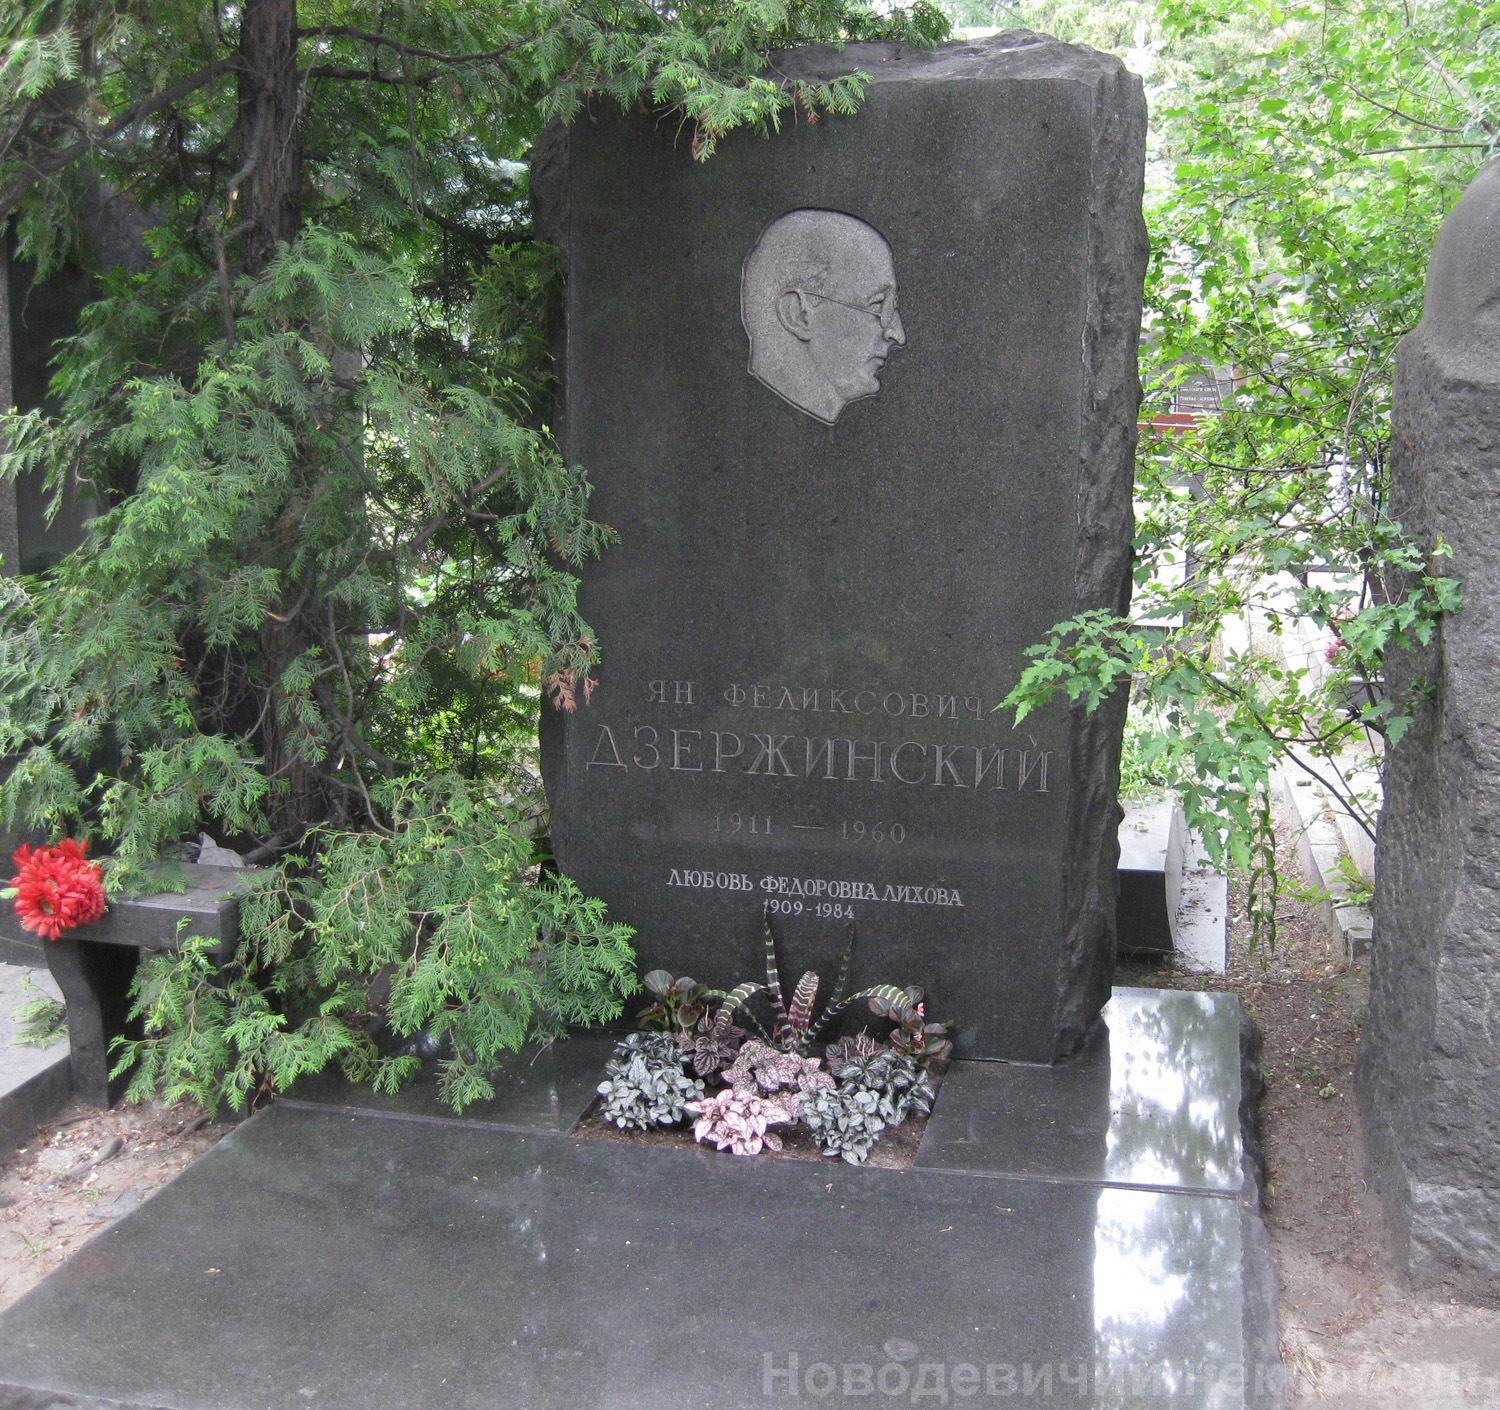 Памятник на могиле Дзержинского Я.Ф. (1911–1960), арх. Л.Лихова, на Новодевичьем кладбище (8–7–2).